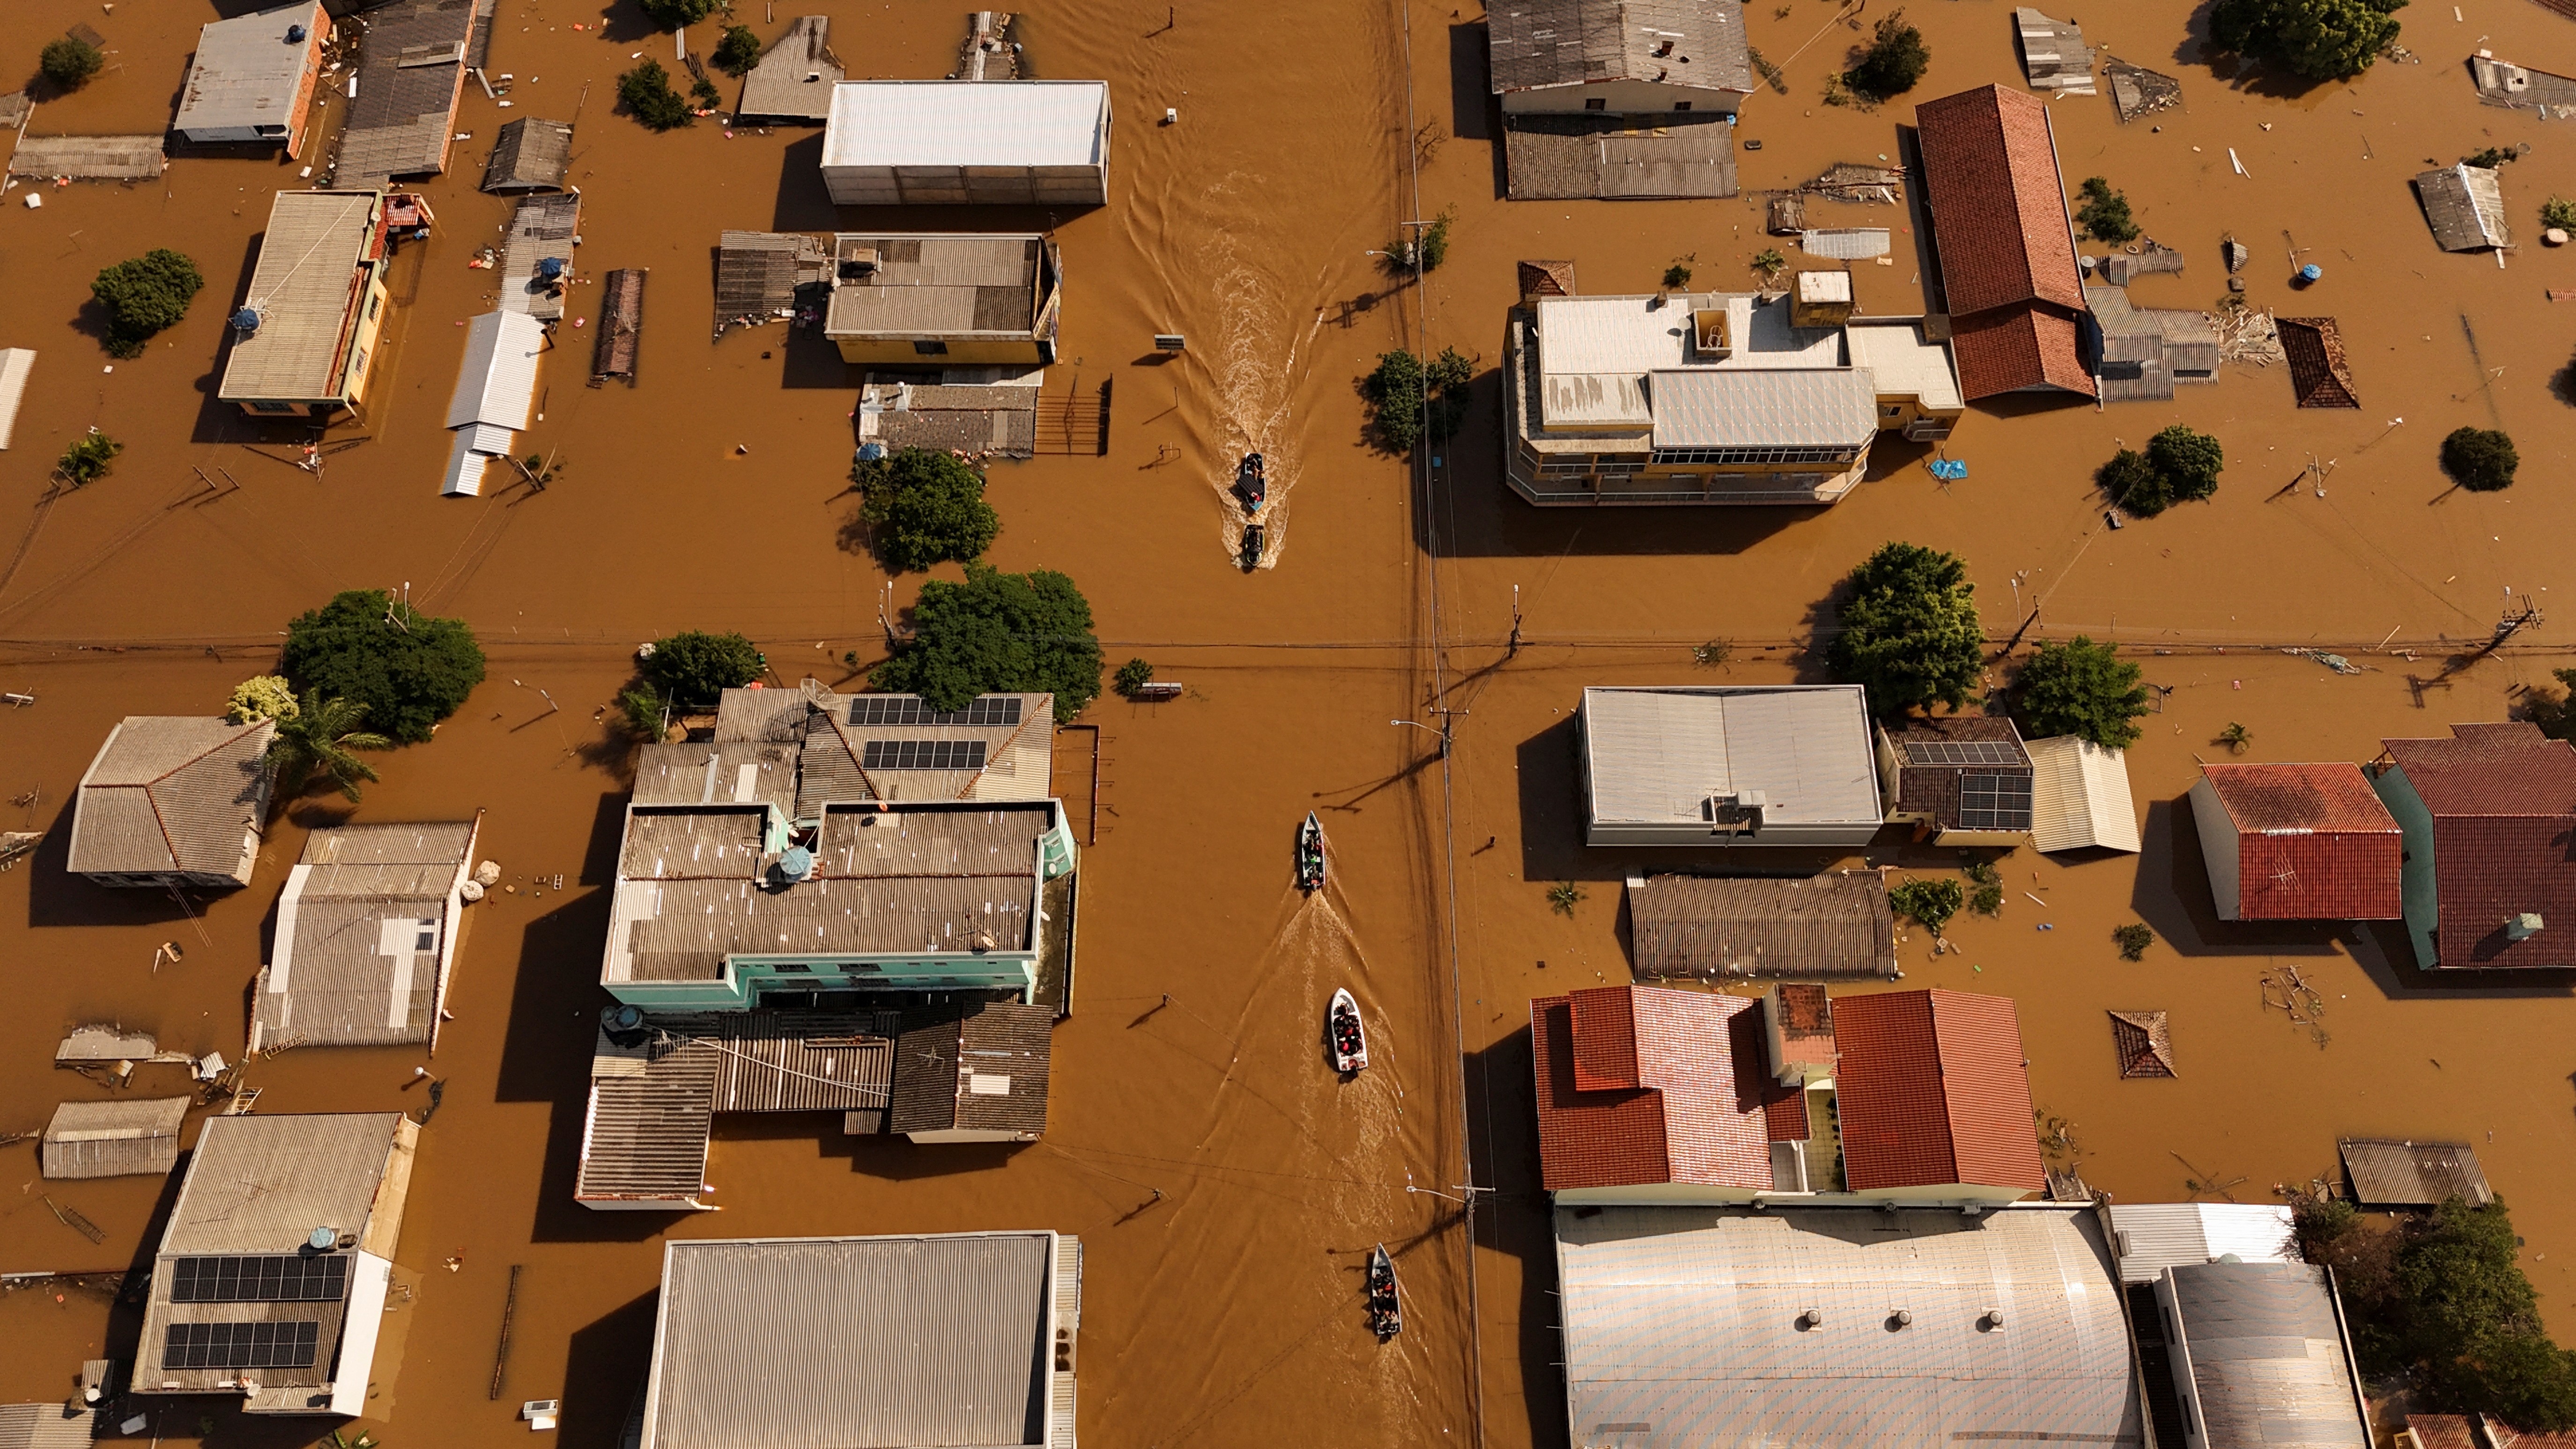 Tragédia no RS: municípios calculam 100 mil casas destruídas ou danificadas pela chuva